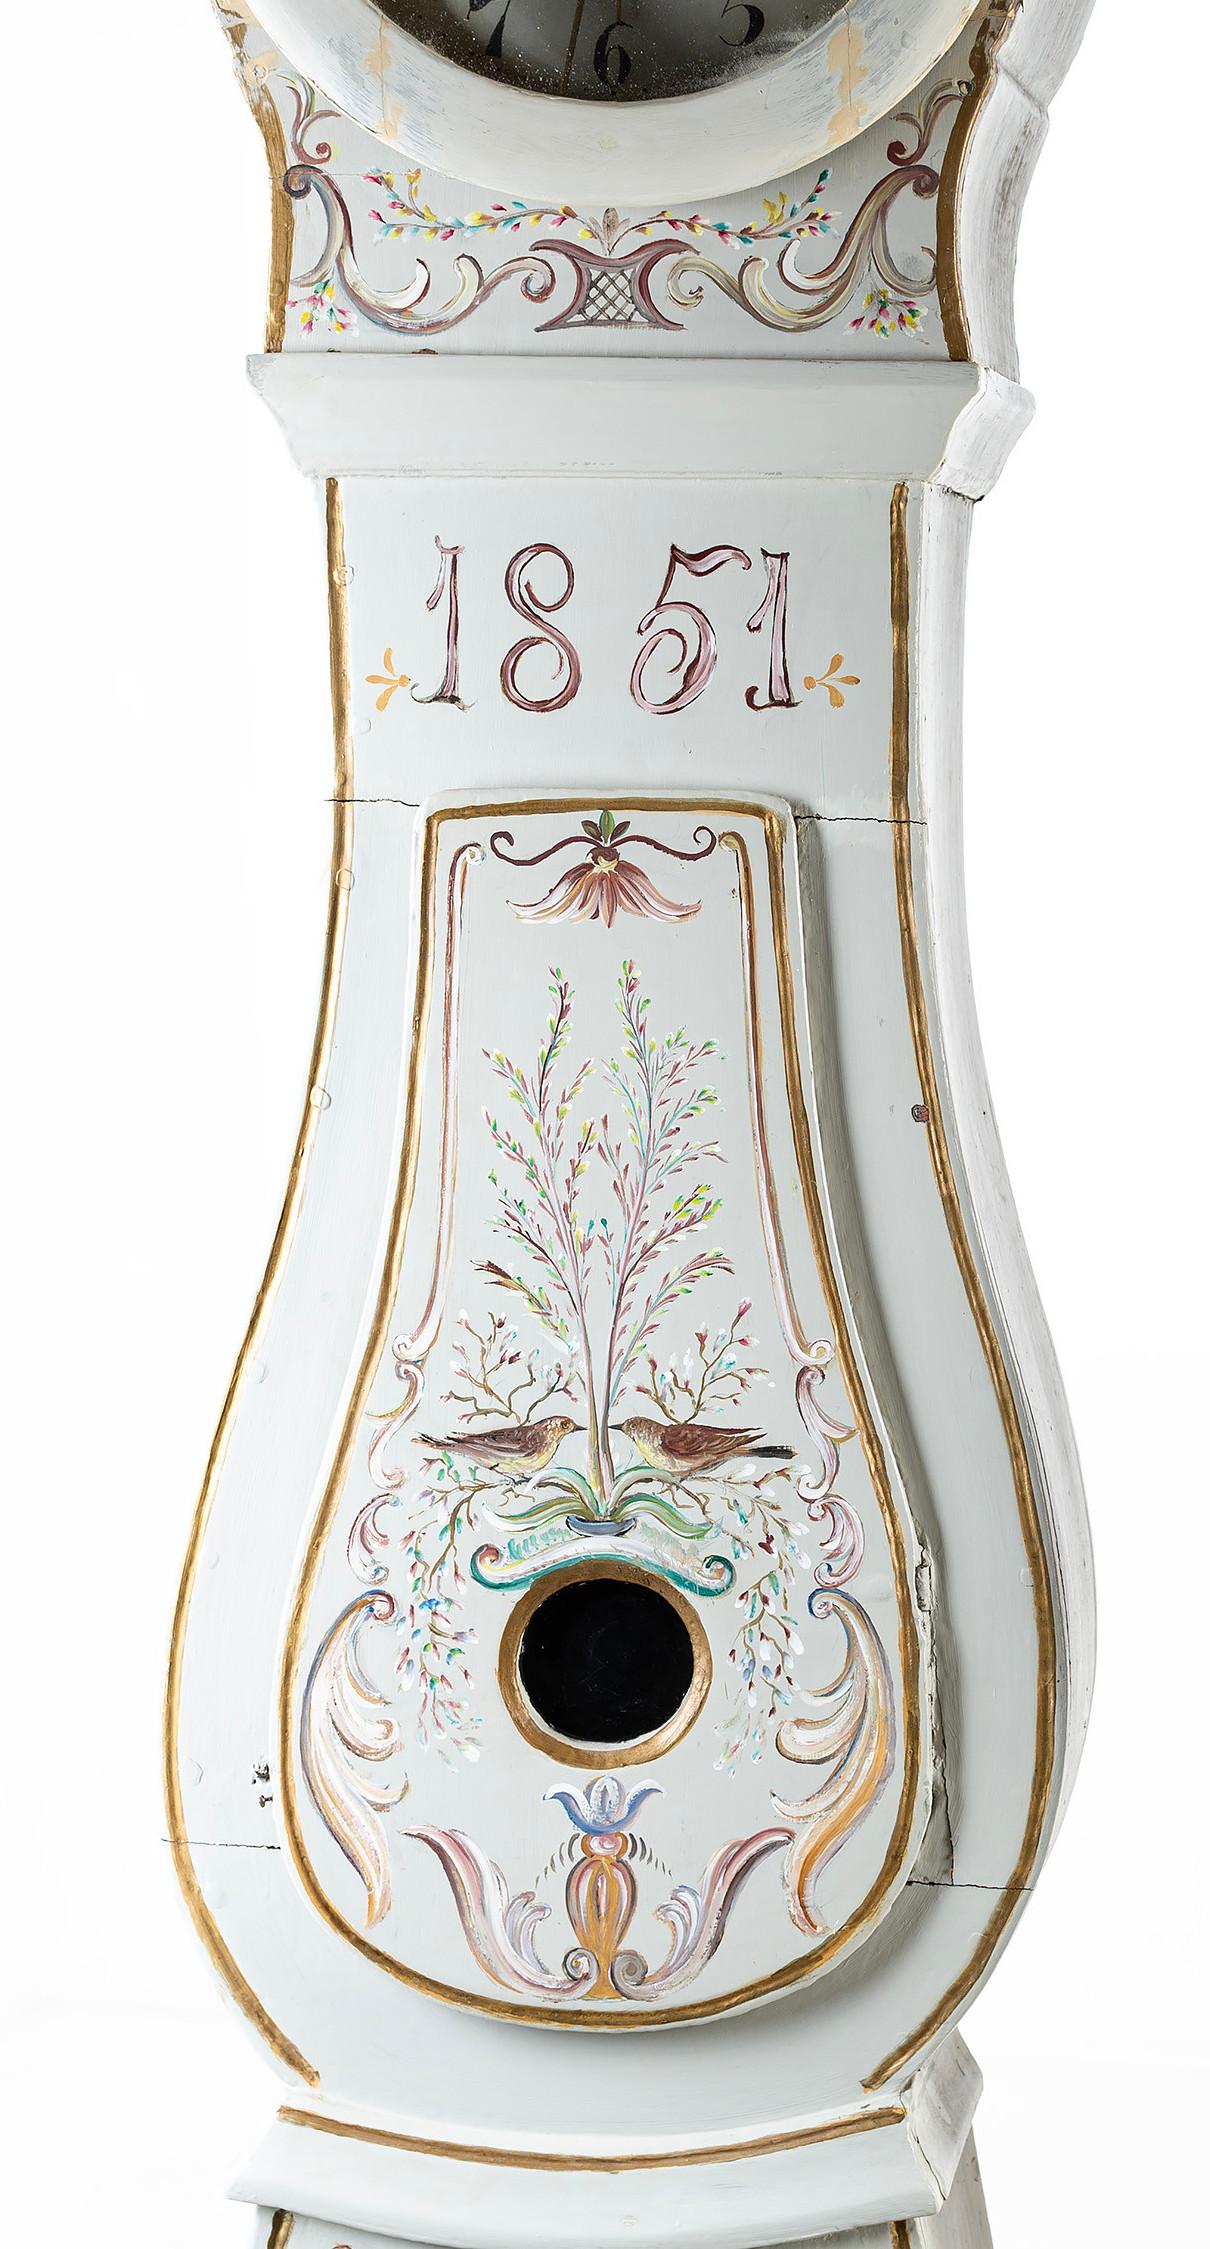 Pendule Mora suédoise de 1851 avec des détails floraux peints à la main sur un fond peint en blanc (peinture d'origine). Couronne sculptée. Les détails du cadran comprennent le nom de l'horloger : Anders Matsson et le village Mora. Mécanisme